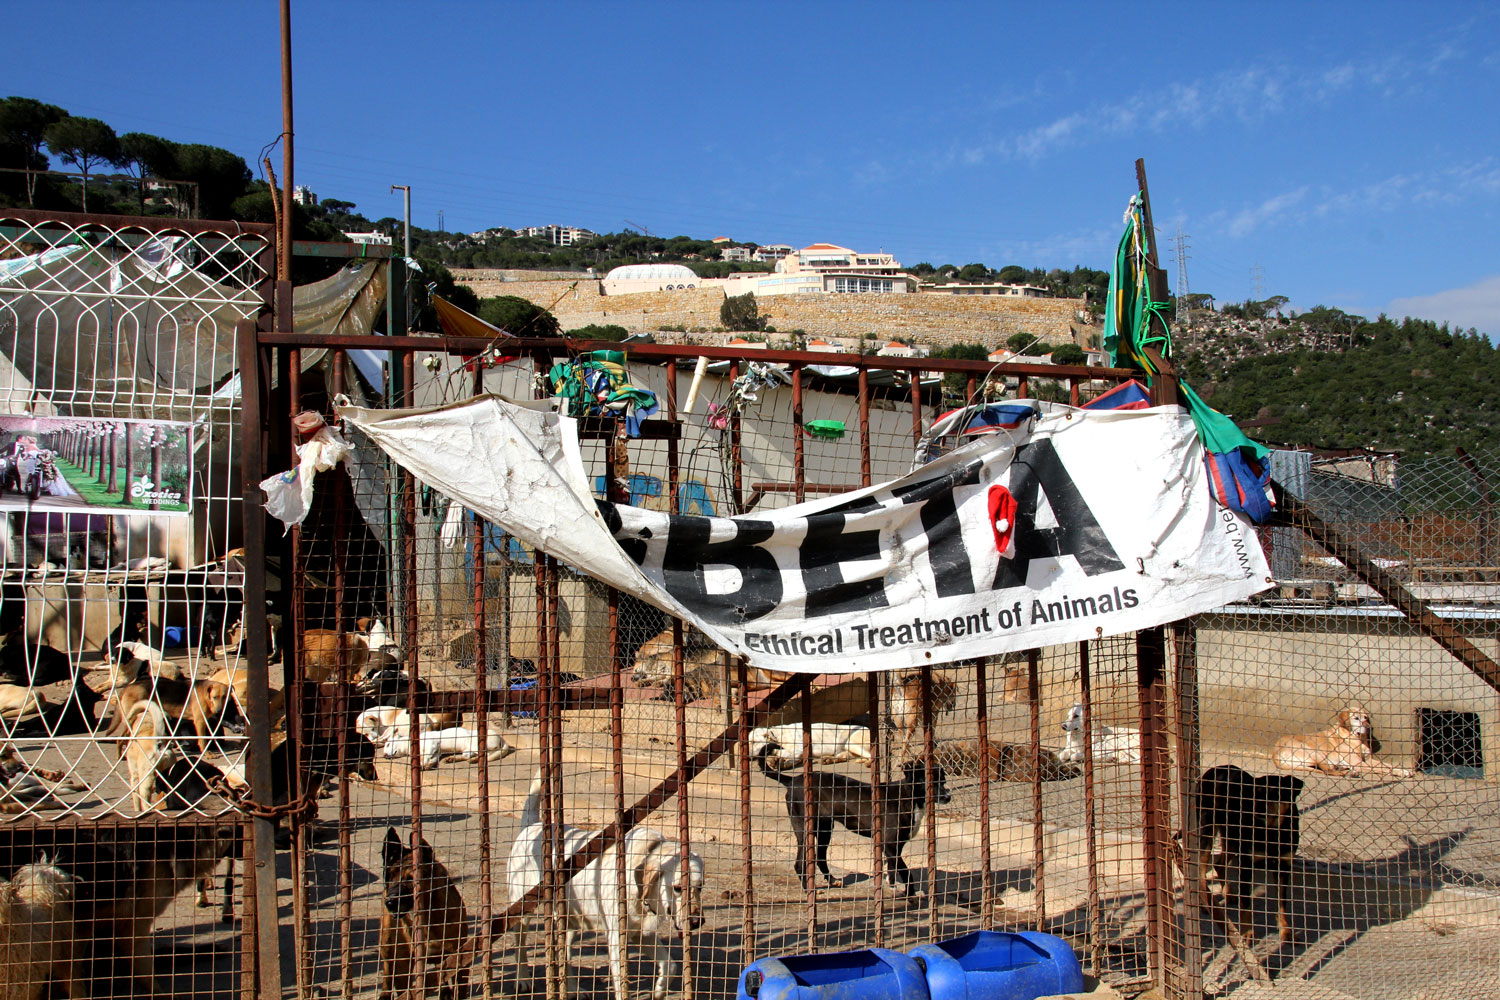 Quand BETA a ouvert le refuge, la zone était boisée. Aujourd’hui, les riches Libanais abattent les arbres, construisent leurs maisons et veulent chasser le refuge.